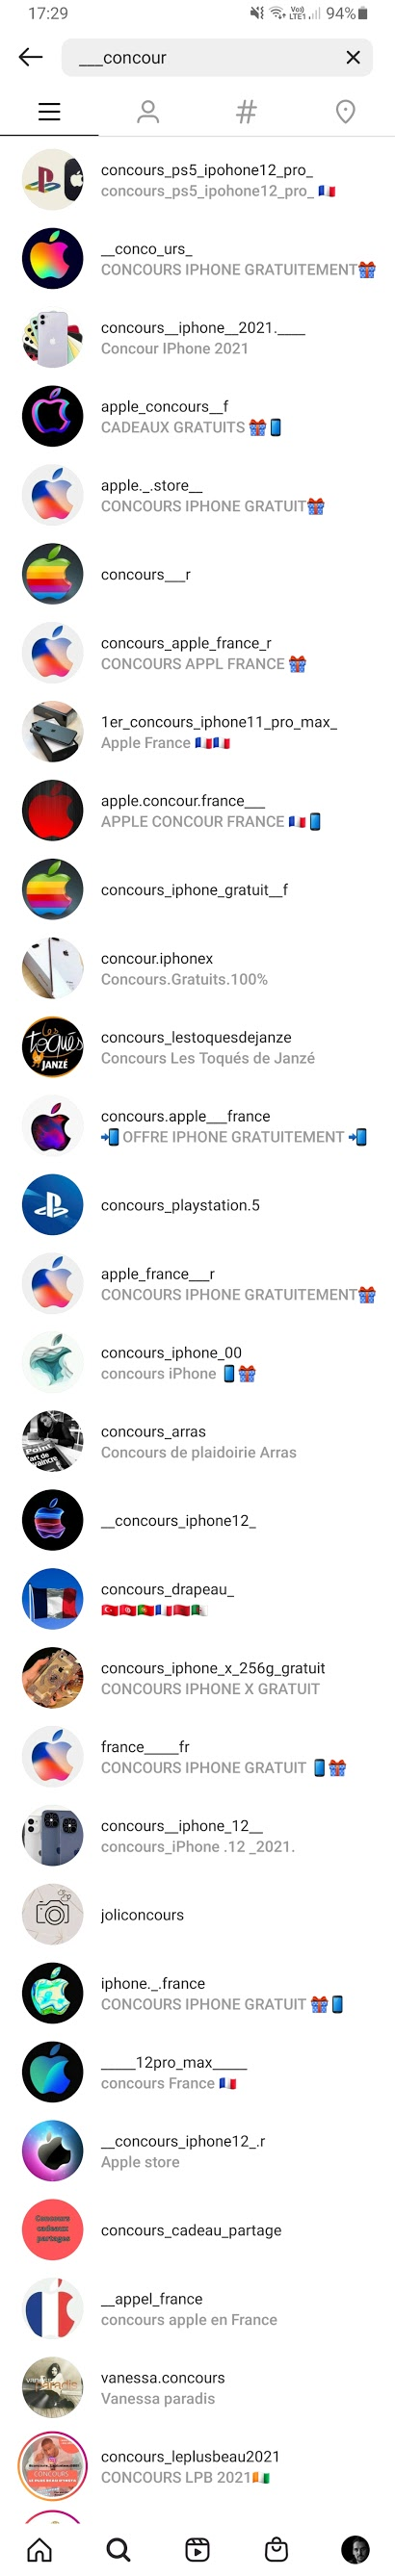 Capture d'écran Instagram du 26 avril 2021 présentant une liste de comptes de concours, la majorité correspondant au schéma de cette arnaque